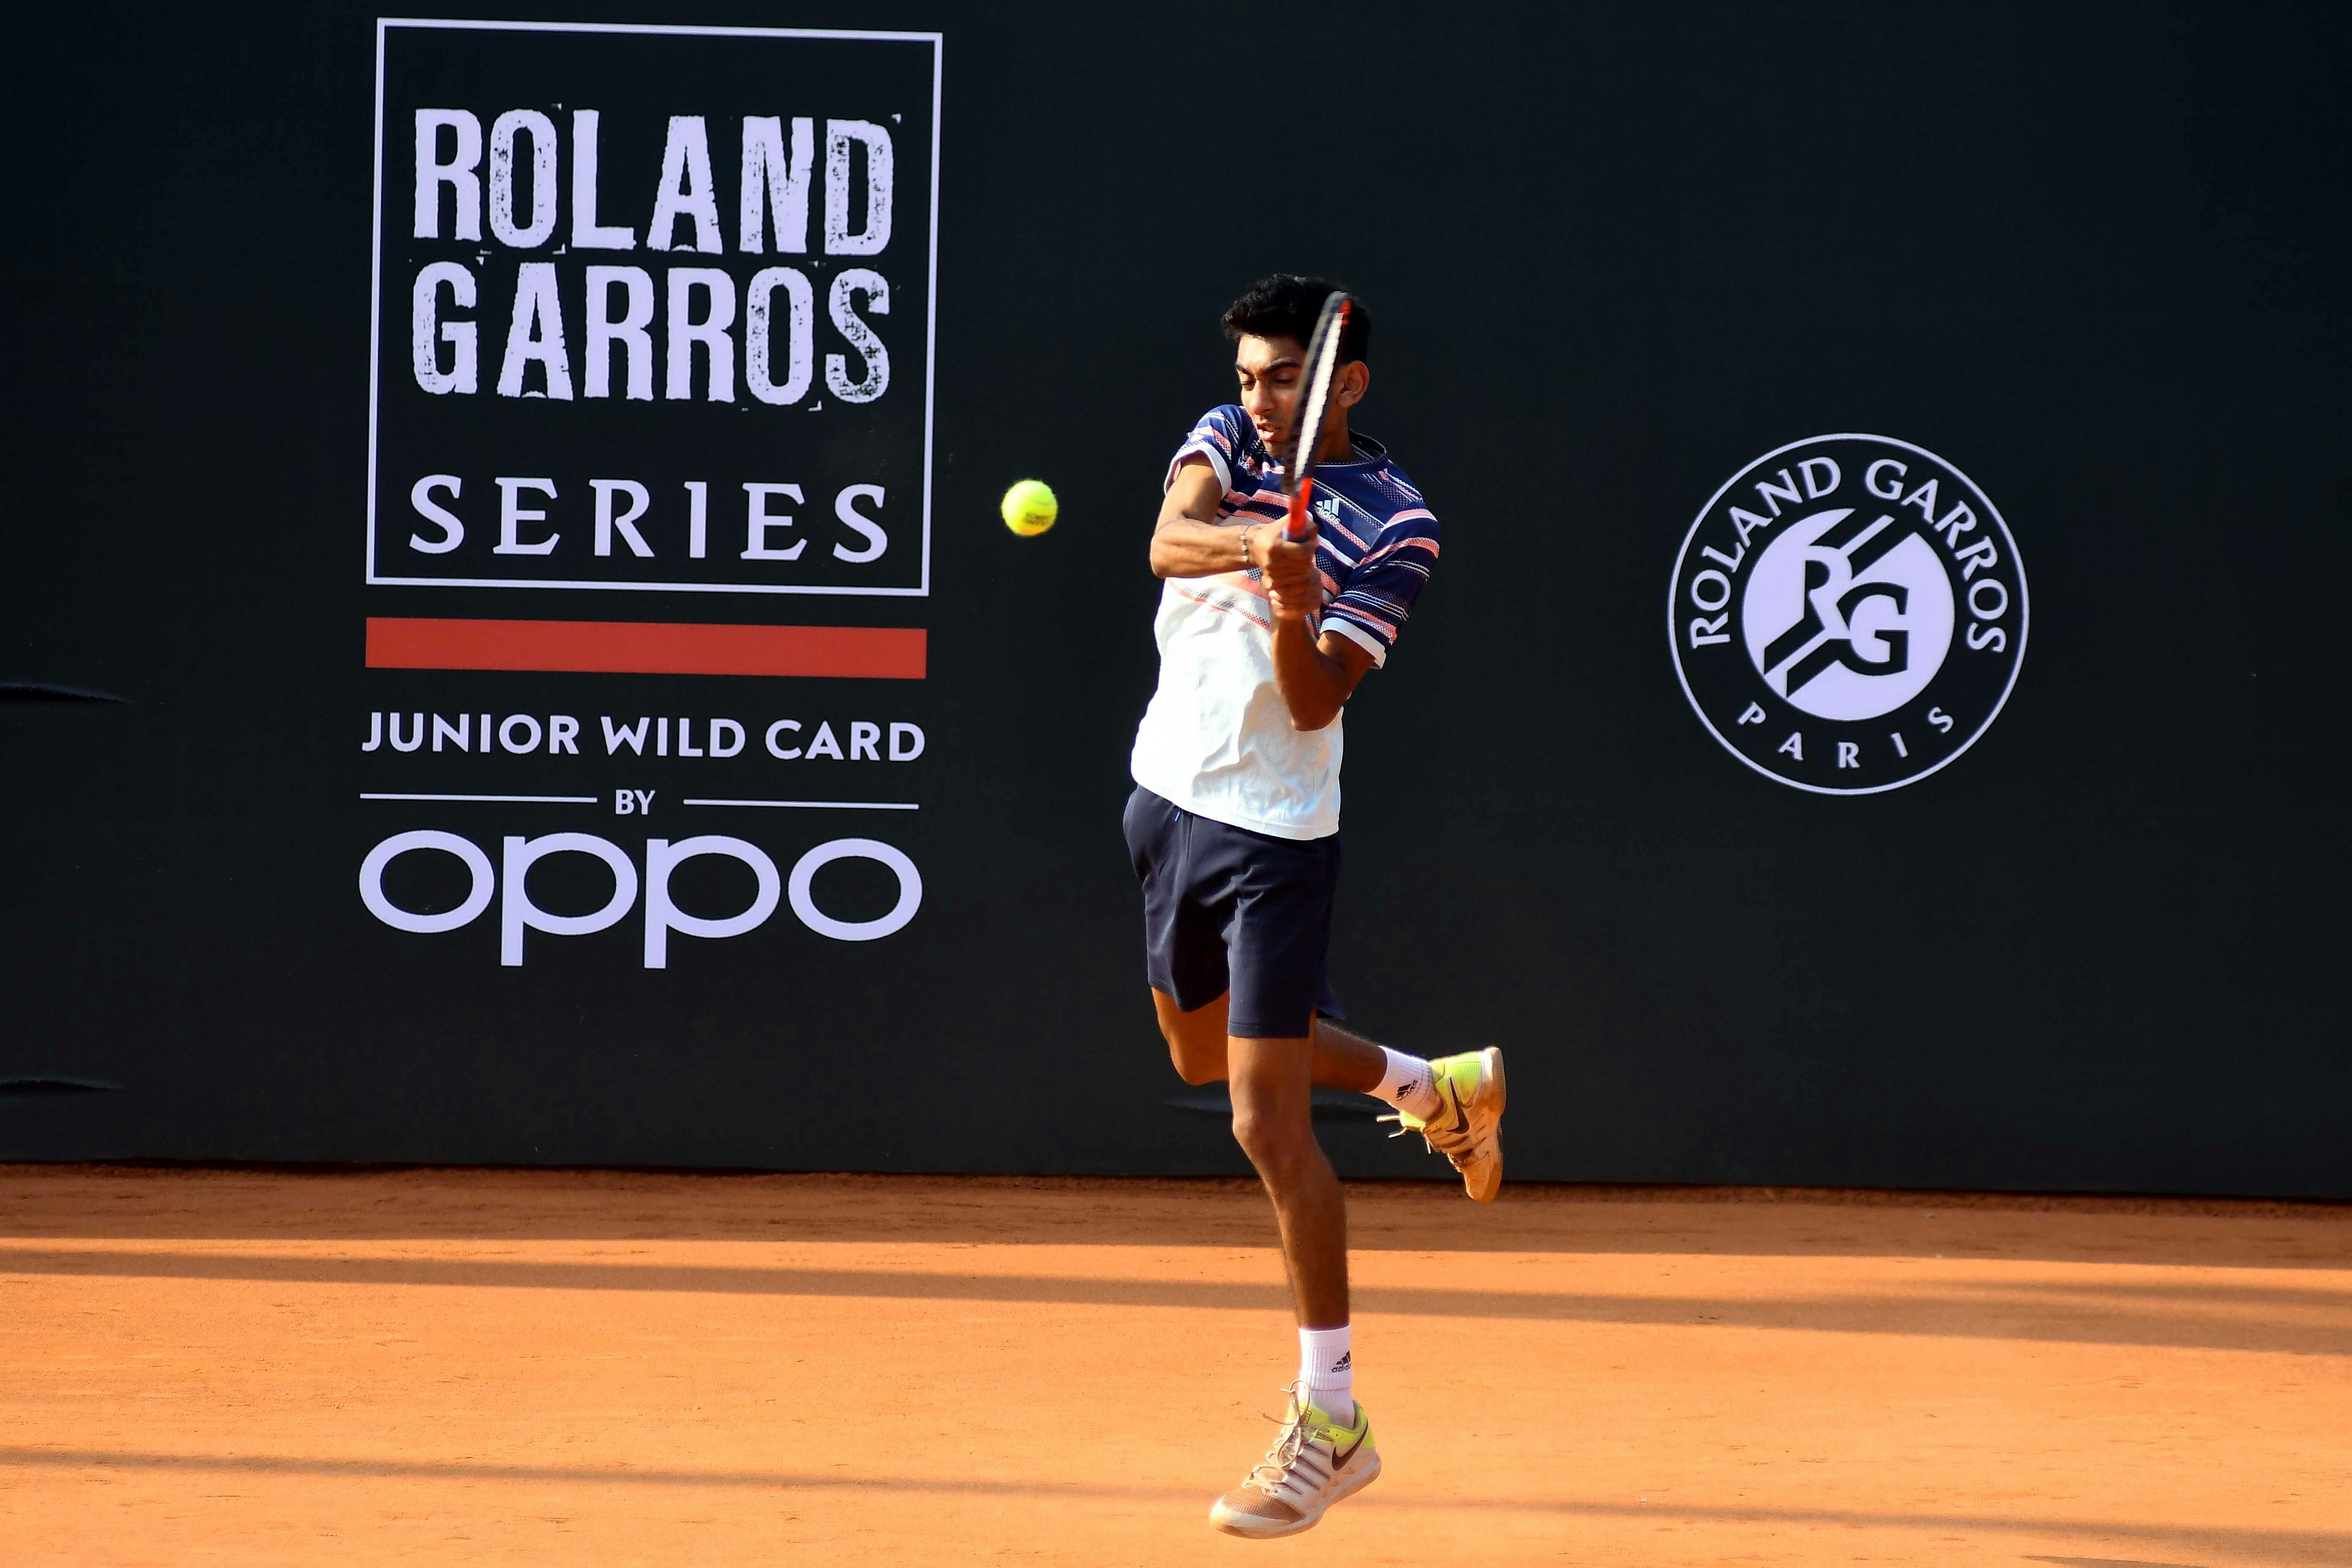 Roland Garros Junior Wild Card Series 2022